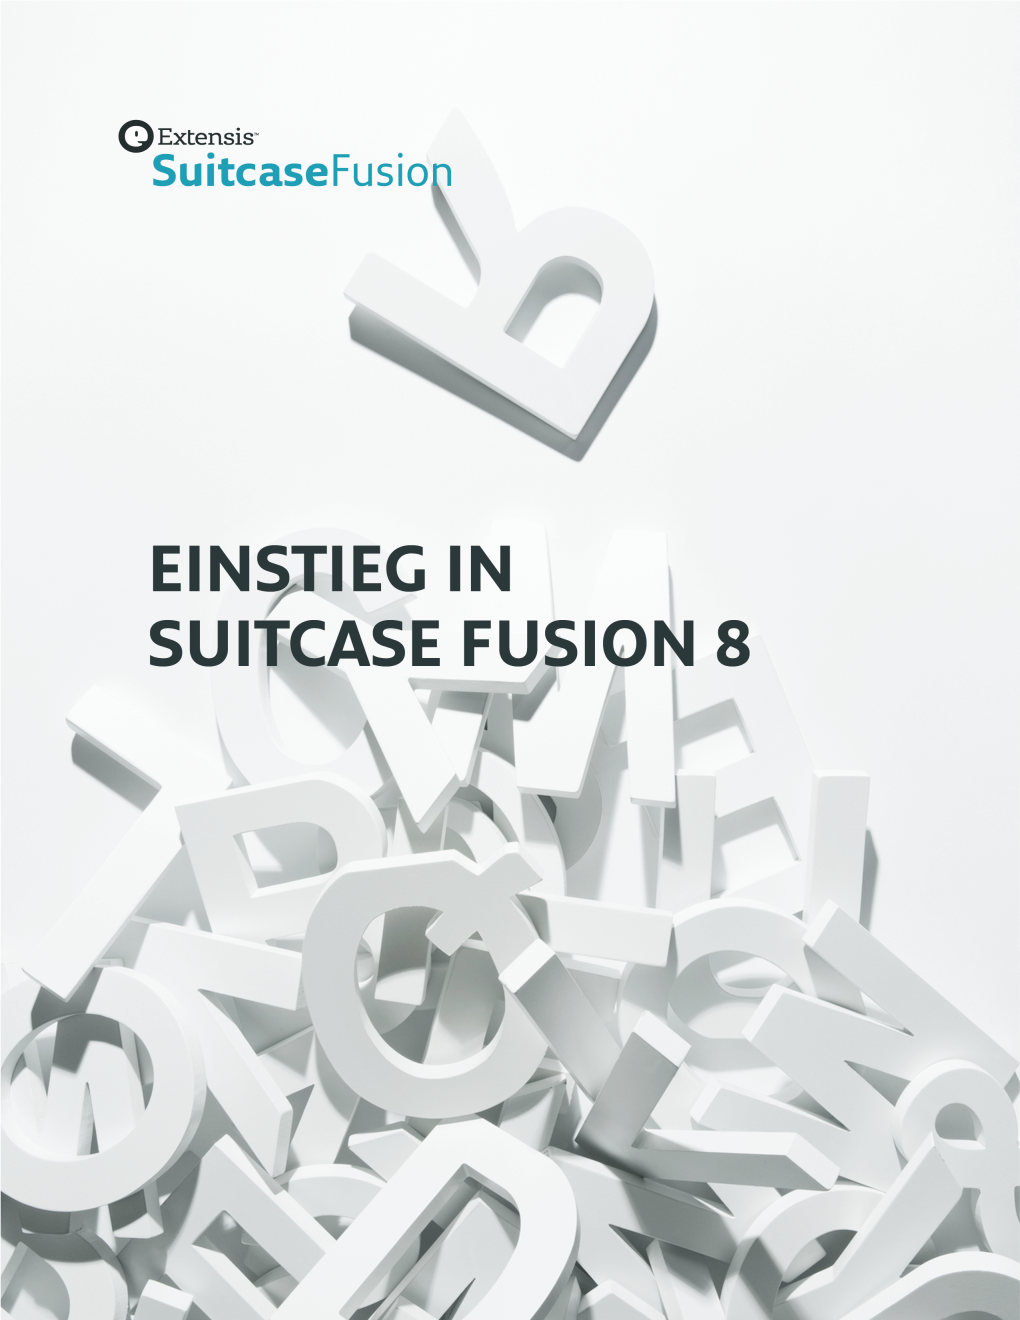 Einstieg in Suitcase Fusion 8